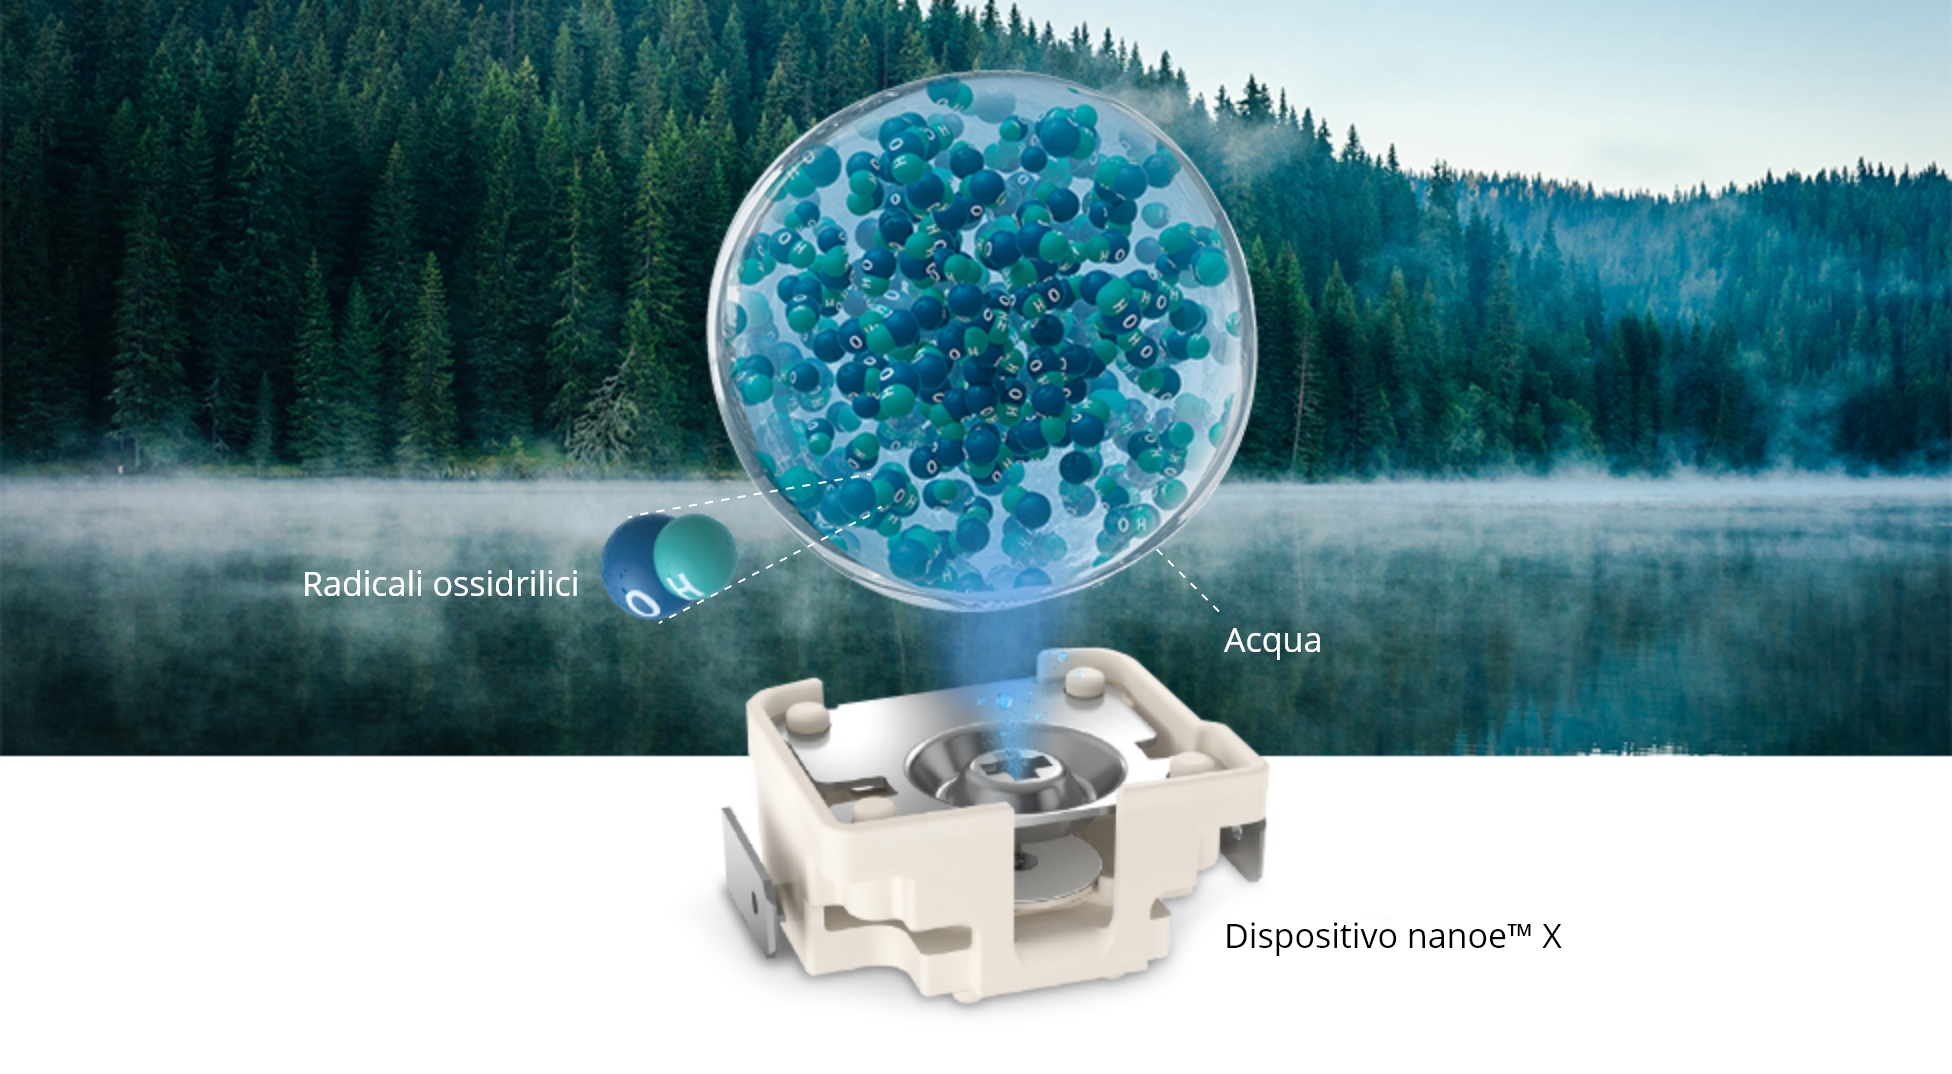 Immagine della diffusione di nanoe™ X dal dispositivo, sullo sfondo di un lago circondato da una foresta con la nebbia che sale dall'acqua.